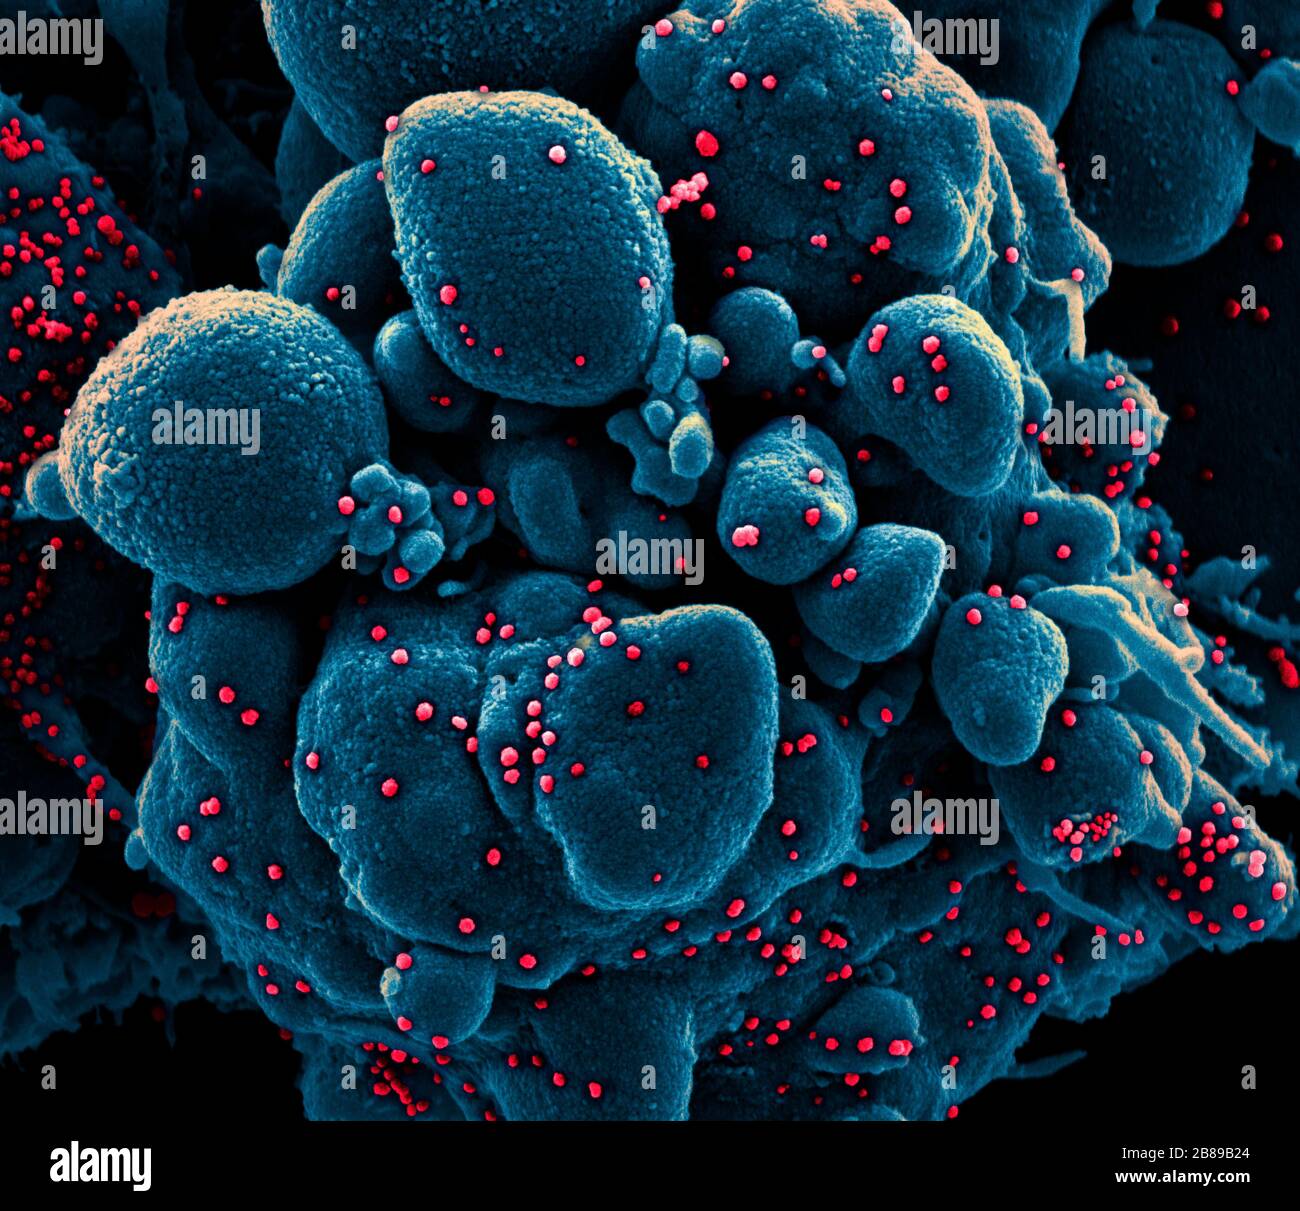 Ein Transmissionselektronenmikrograph aus COVID-19, neuartigen Coronavirus, einer apoptotischen Zelle, die stark mit SARS-COV-2-Virus-Partikeln infiziert ist, isoliert von einer Patientenprobe in der NIAID Integrated Research Facility am 18. März 2020 in Fort Detrick, Maryland. Stockfoto